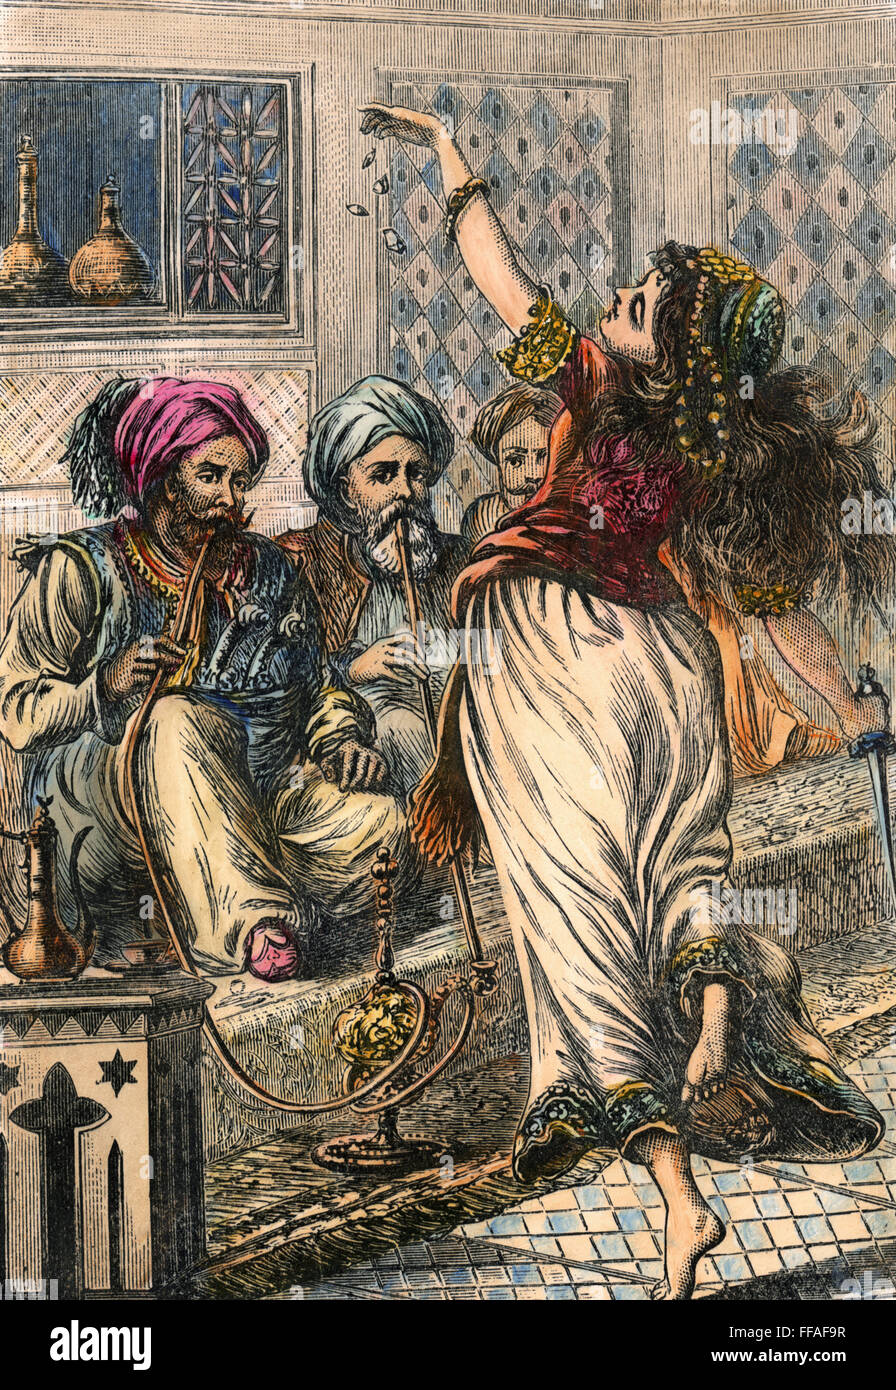 ALI Baba y los 40 ladrones./nMorgiana realiza la 'dagger dance' antes de los 40 ladrones. El grabado en madera, del siglo XIX, por el cuento de Ali Baba de 'Arabian Nights'. Foto de stock